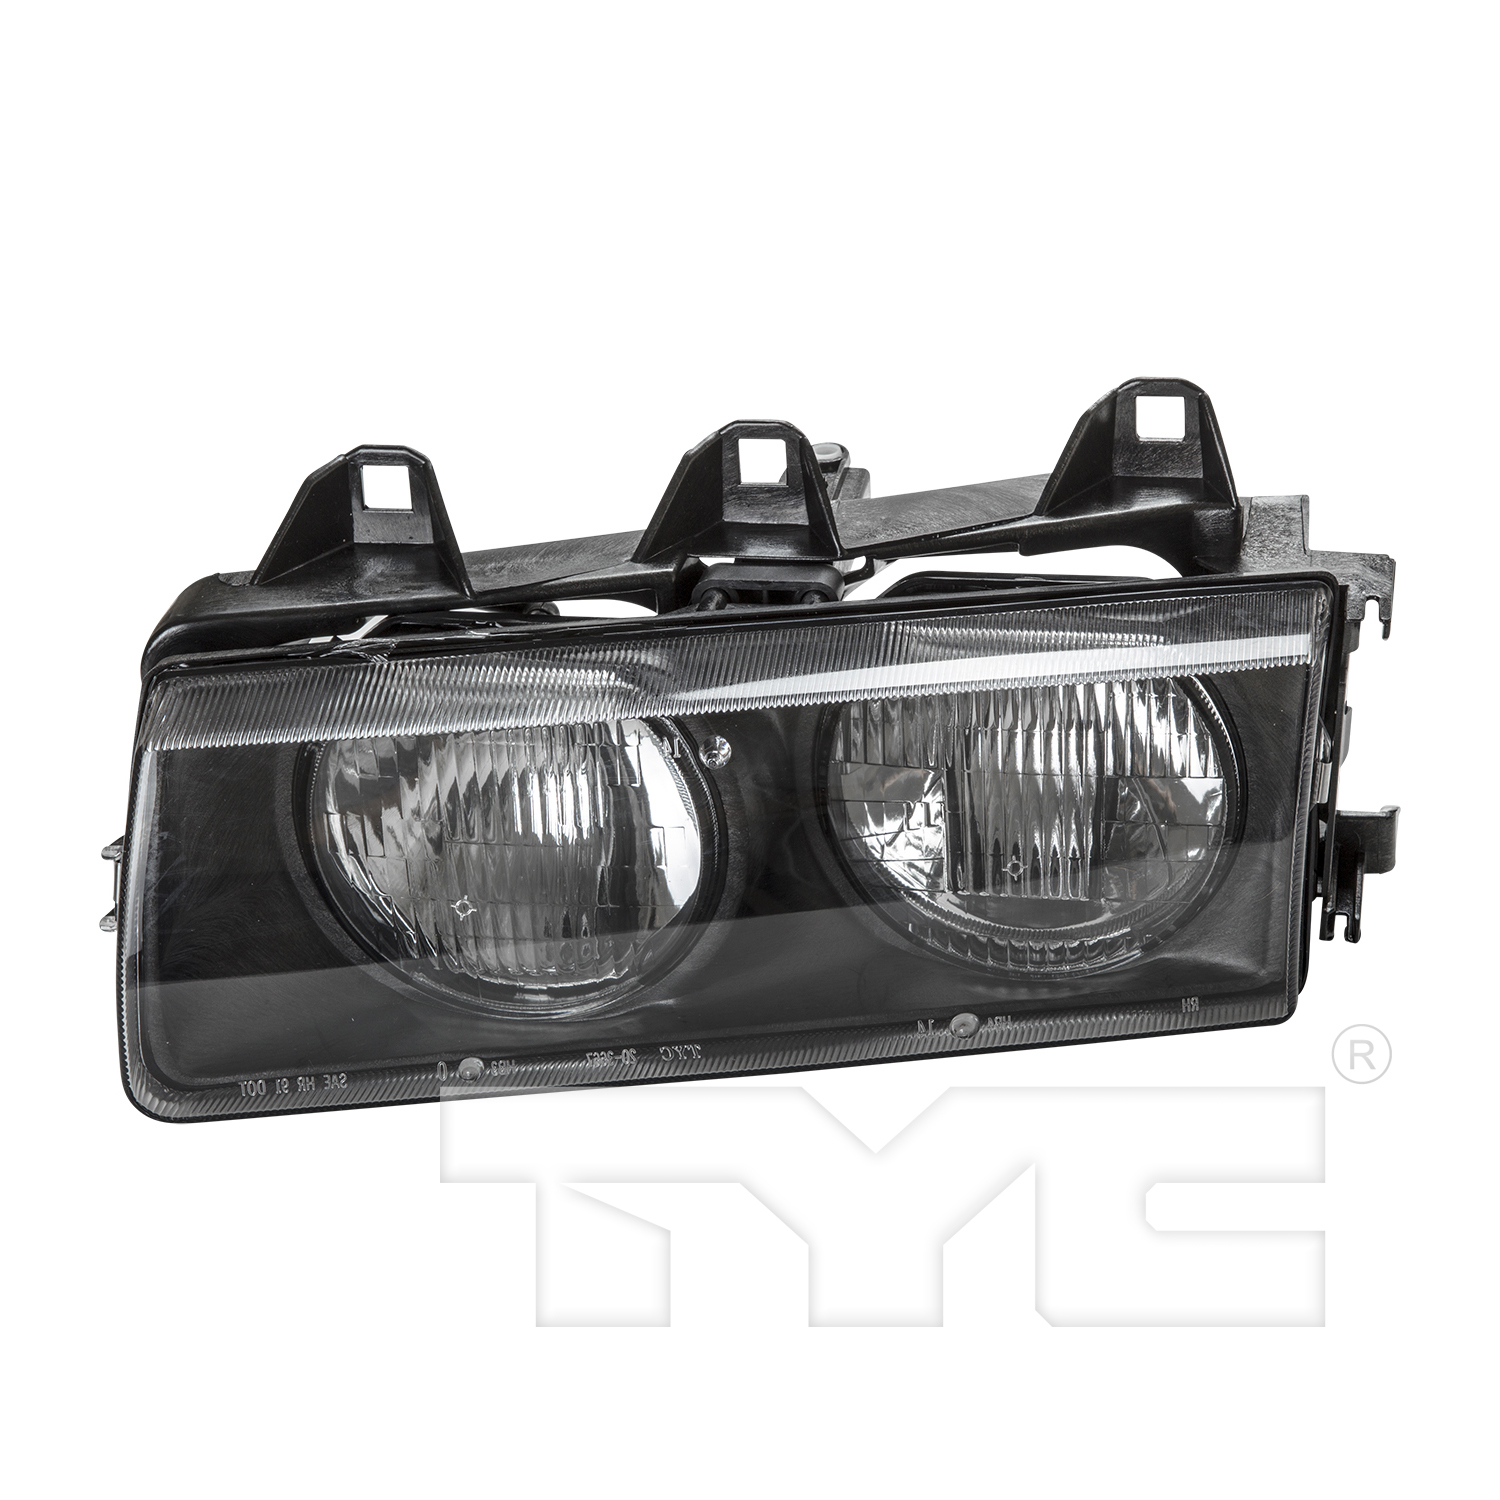 Aftermarket HEADLIGHTS for BMW - 328I, 328i,96-98,LT Headlamp assy composite